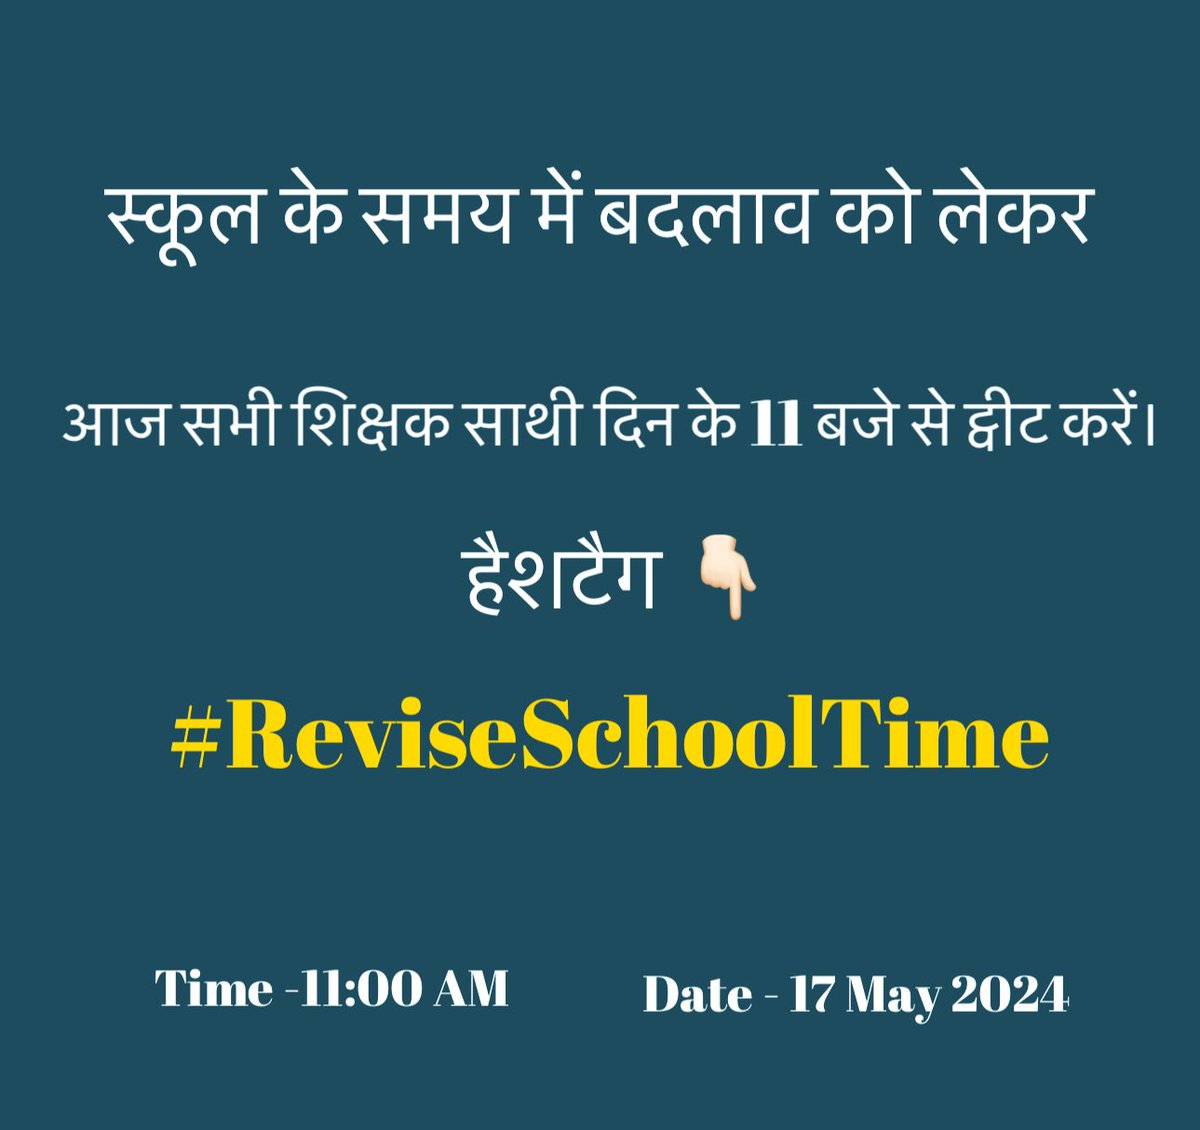 स्कूल के समय में बदलाव को लेकर आज सभी शिक्षक साथी दिन के 11 बजे से ट्वीट करें । हैशटैग - #ReviseSchoolTime के साथ । @PratikVoiceObc @PriyanshuVoice @AlokChikku